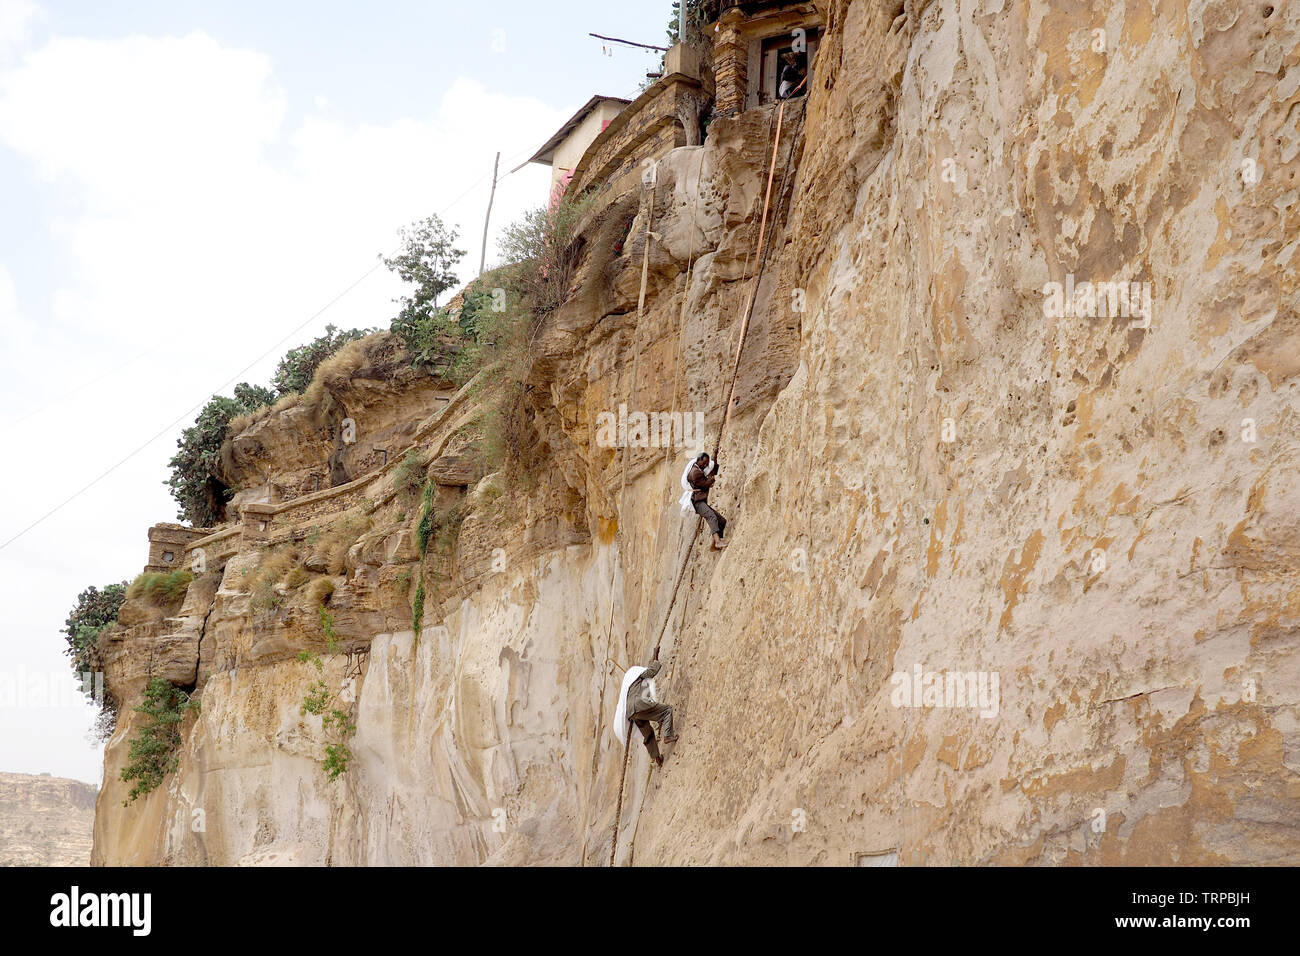 Los monjes escalar una pared de roca en el monasterio de Debre Damo, Etiopía Foto de stock